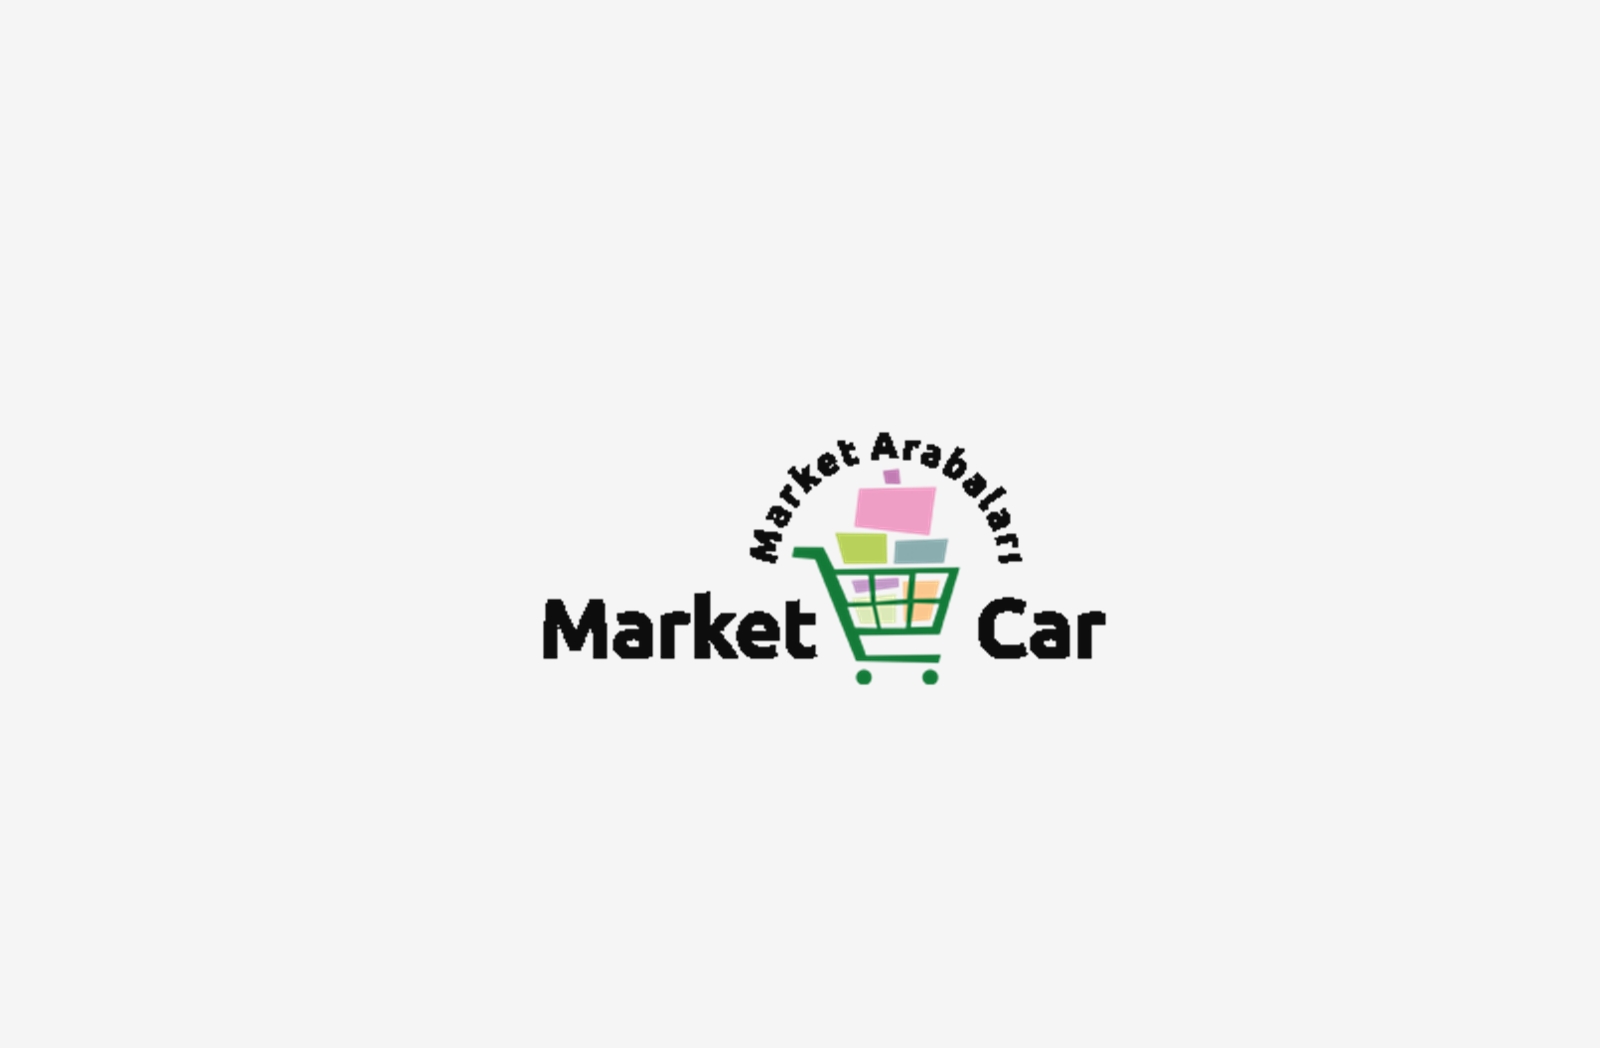 Marketcar Market Arabaları